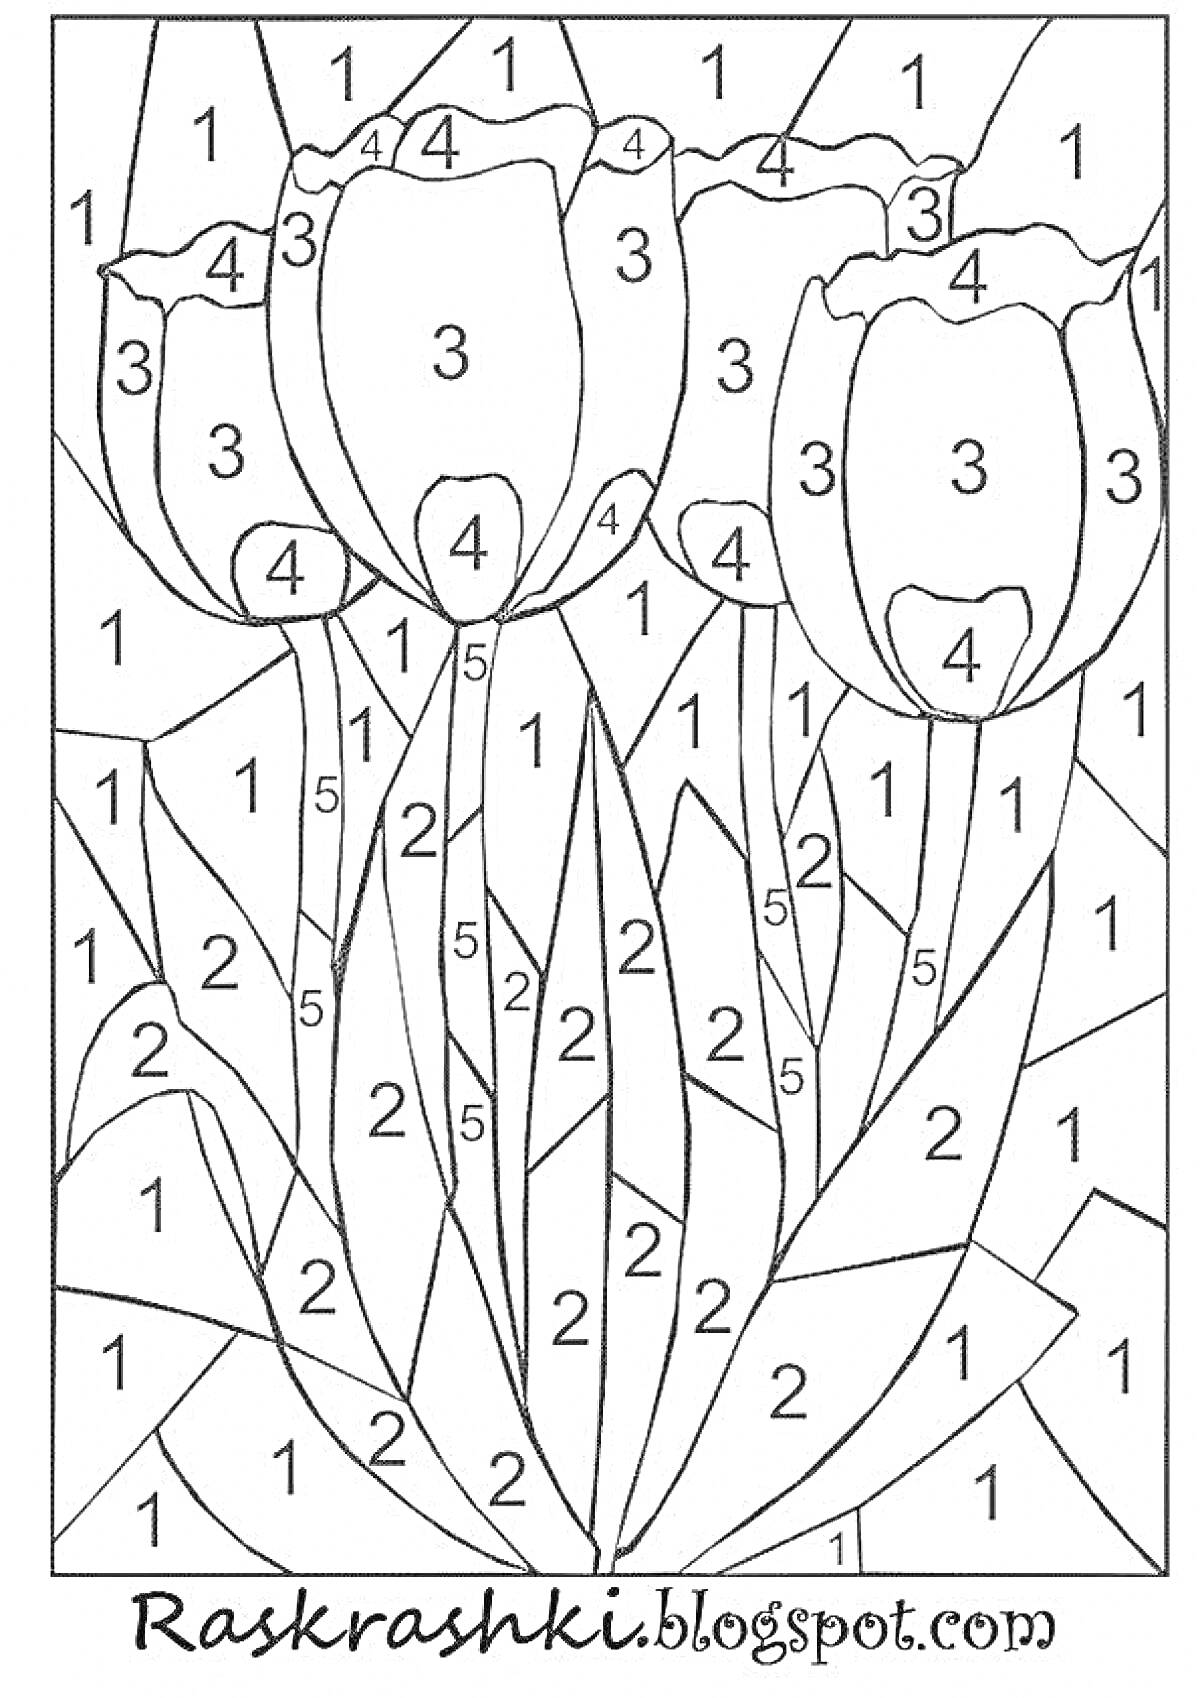 Раскраска Раскраска по цифрам с тремя тюльпанами и листьями